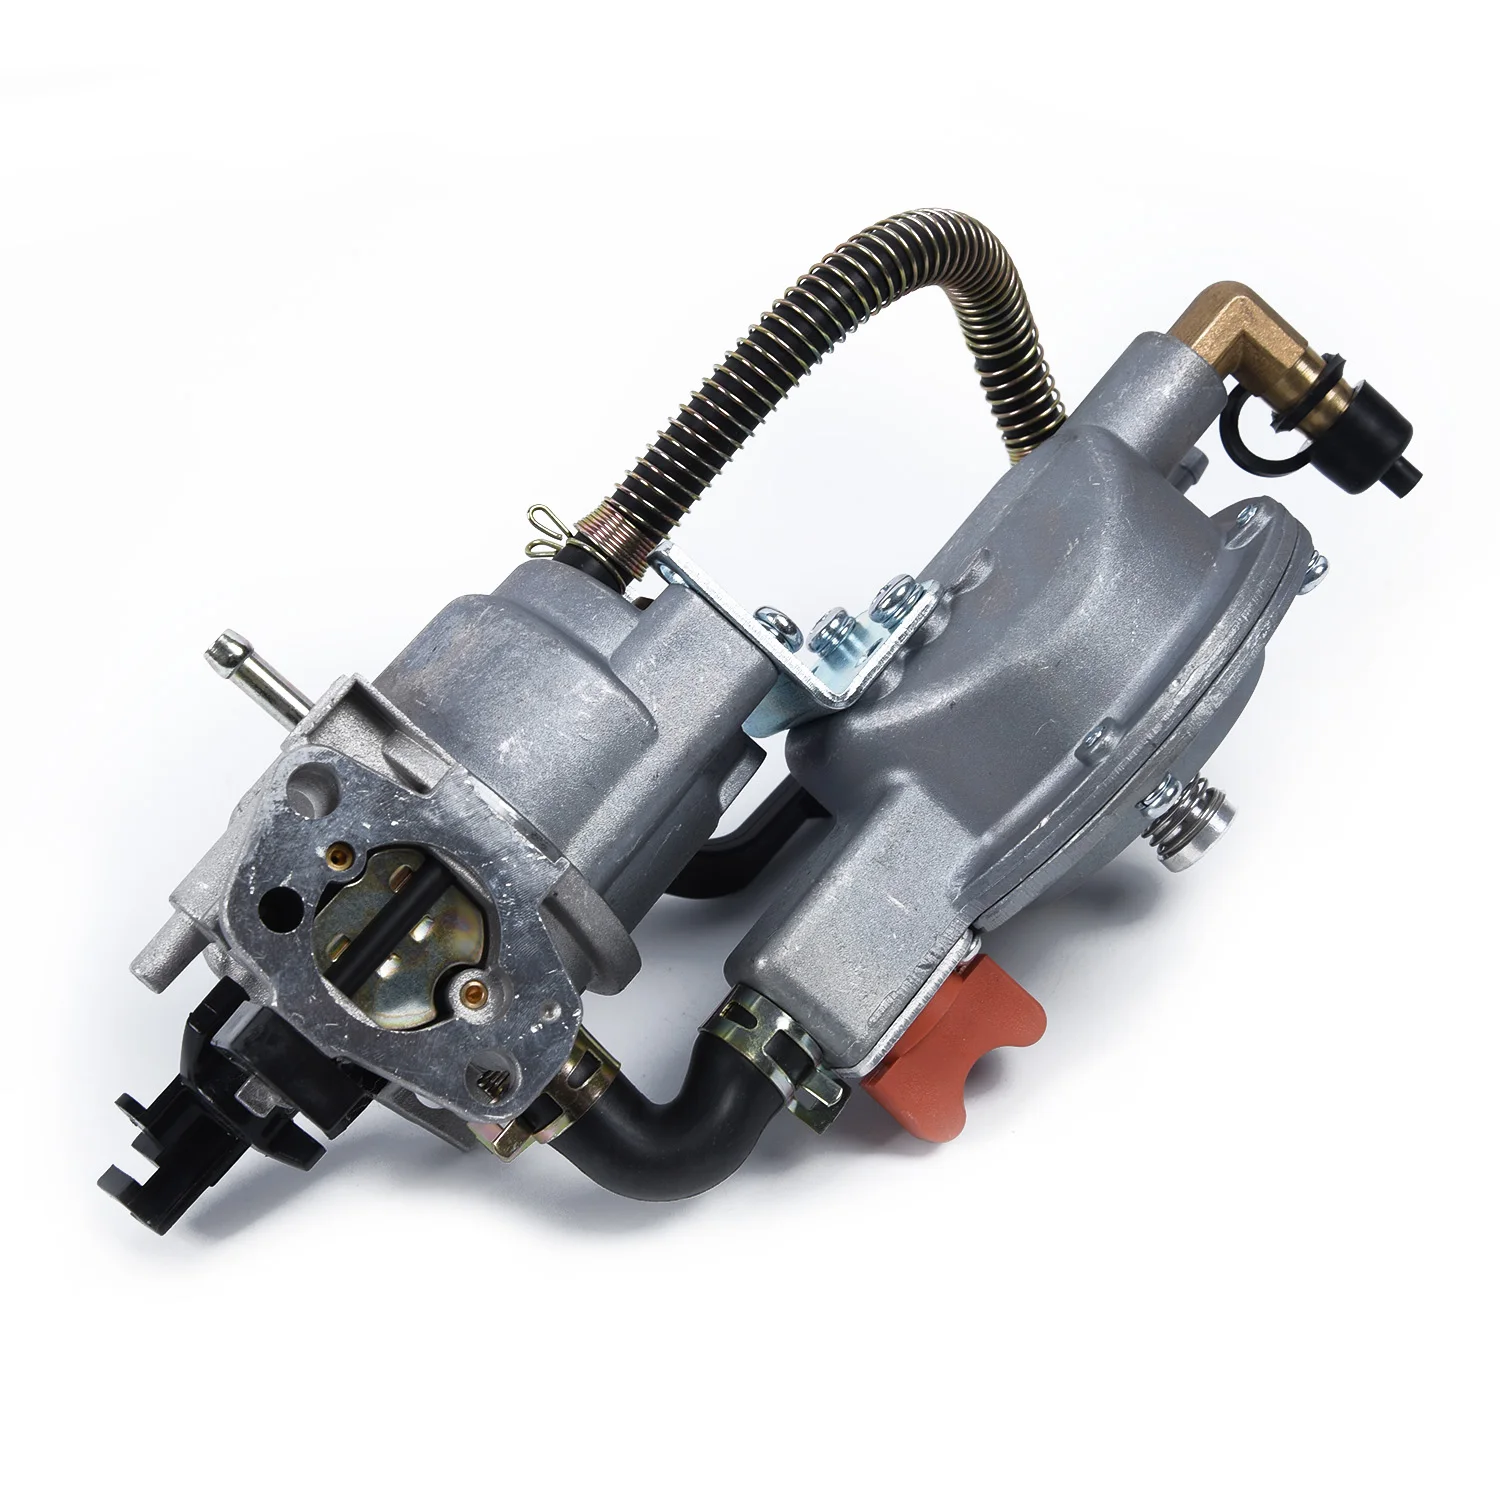 Карбюратор/Карбюратор для Honda GX160 2KW 168F водяной насос двойной топливный генератор бензиновый домашний садовый инструмент Аксессуары